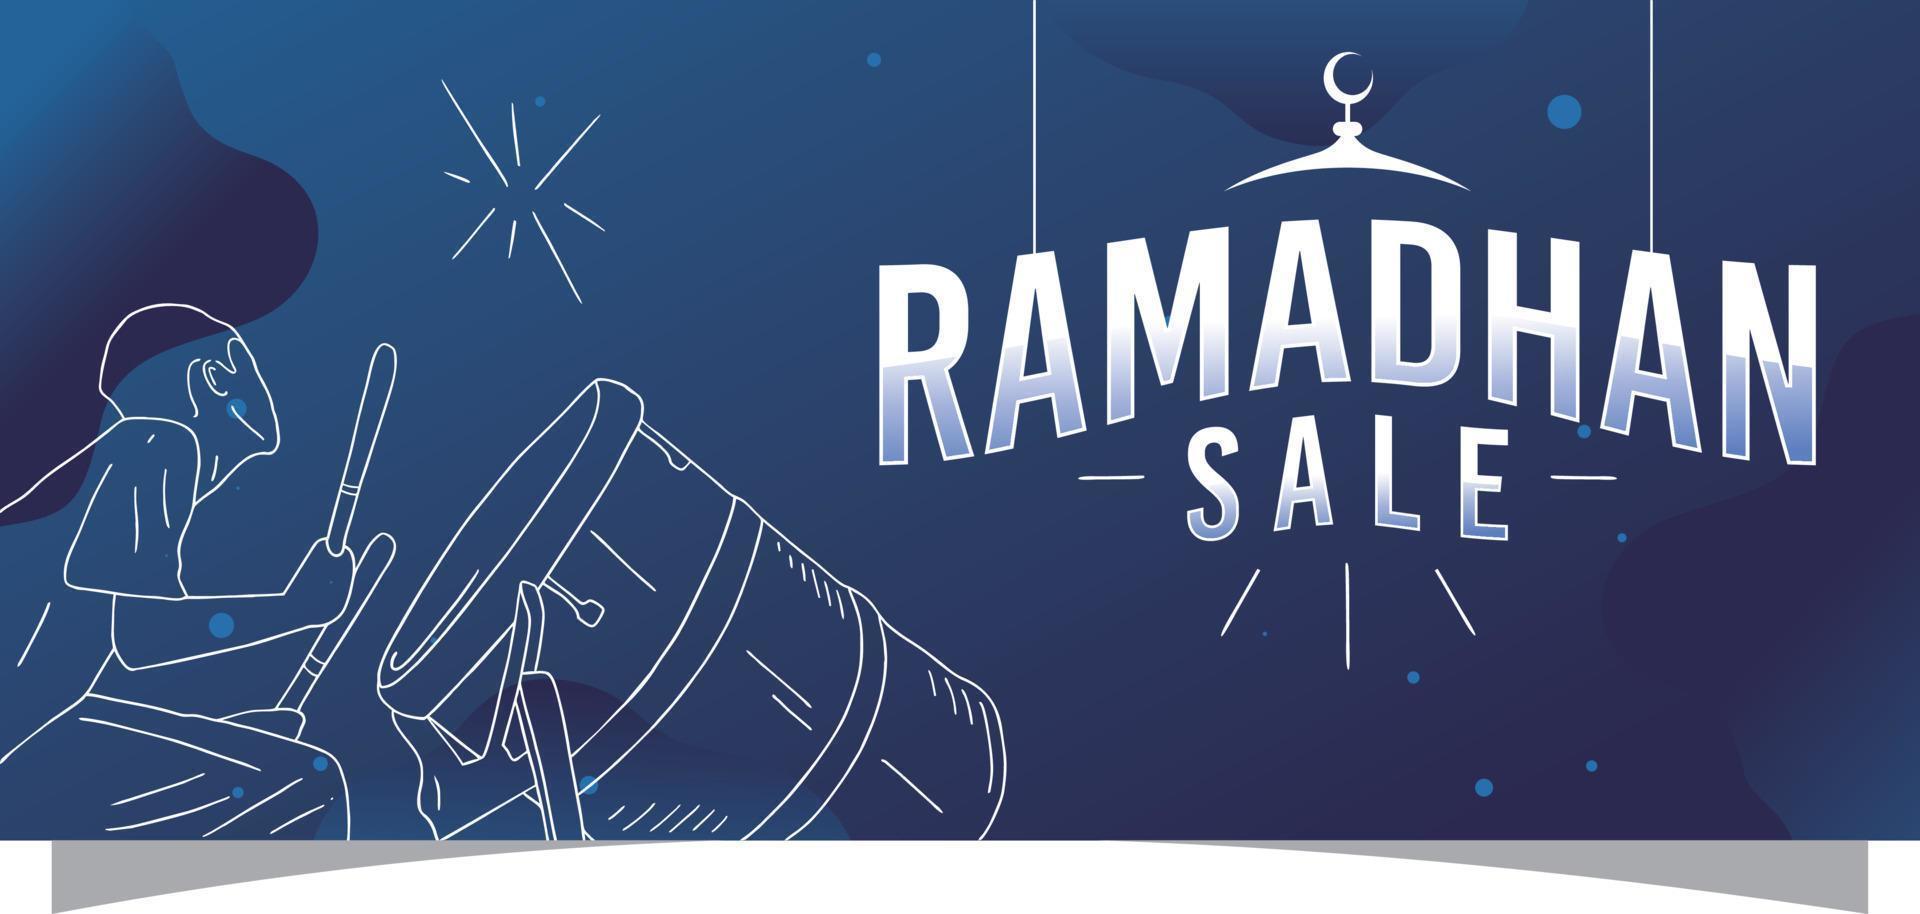 modello di banner di vendita ramadhan disegno vettoriale